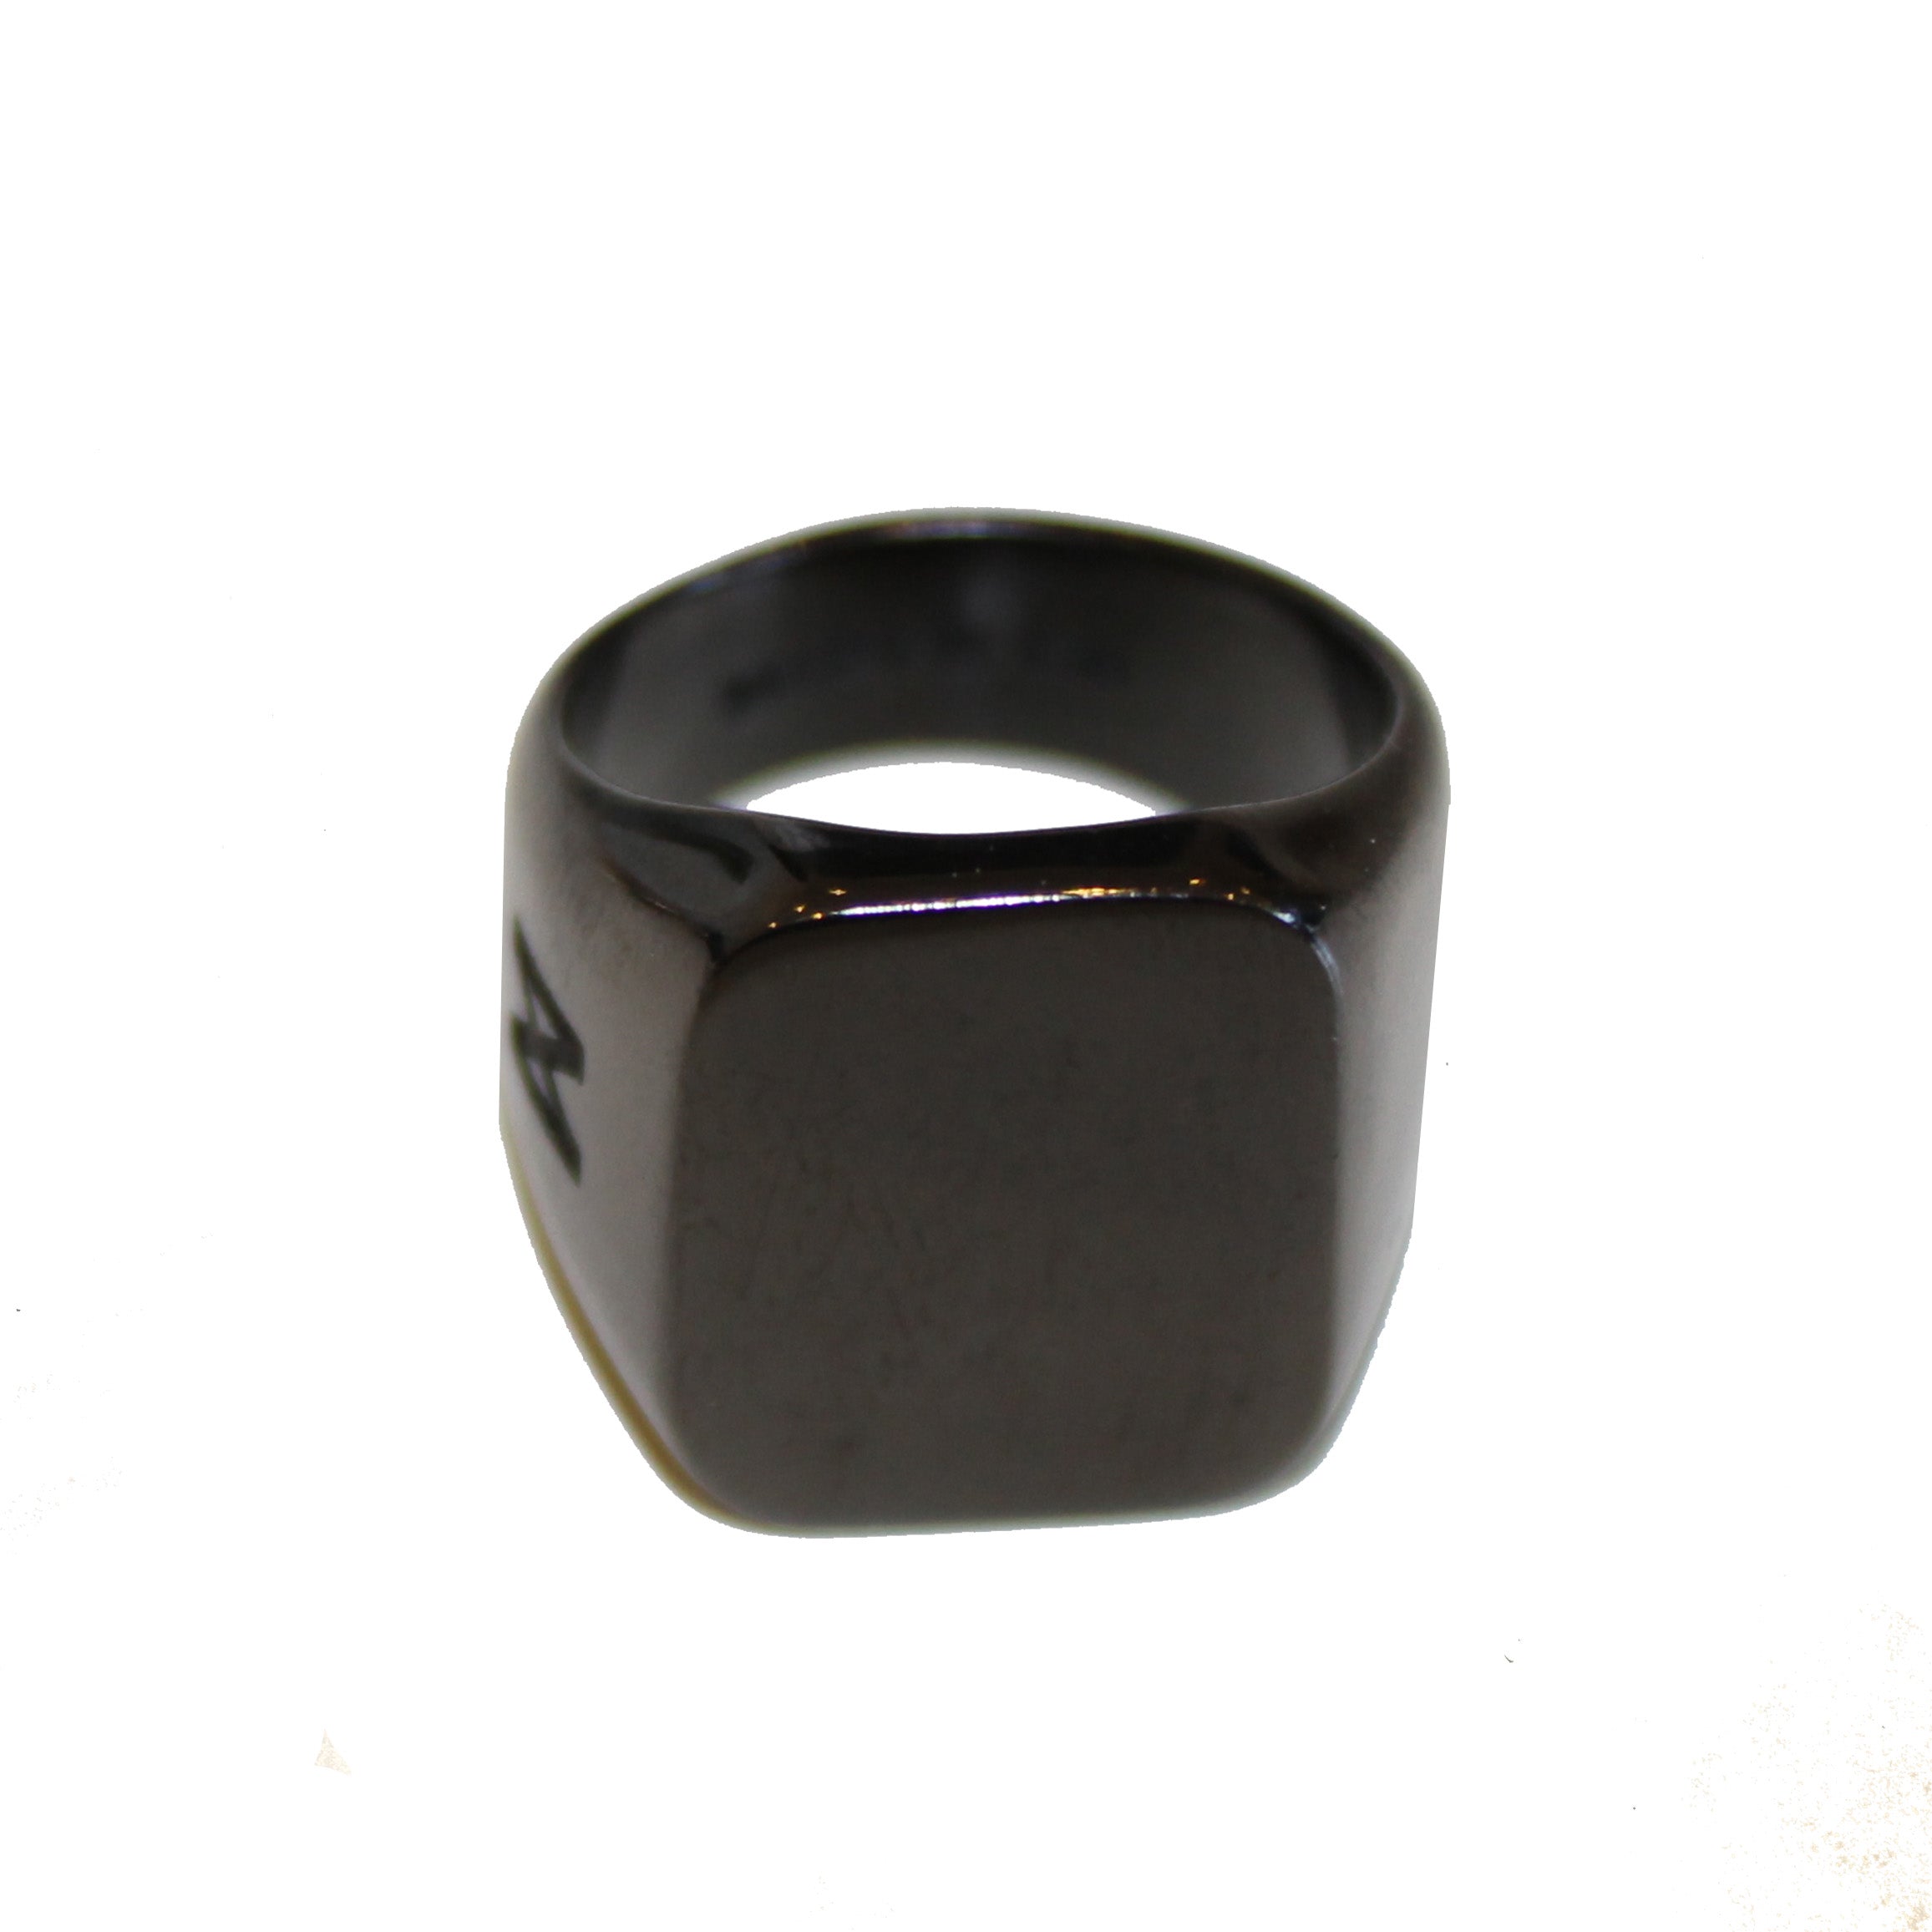 The Kilo Ring in Black